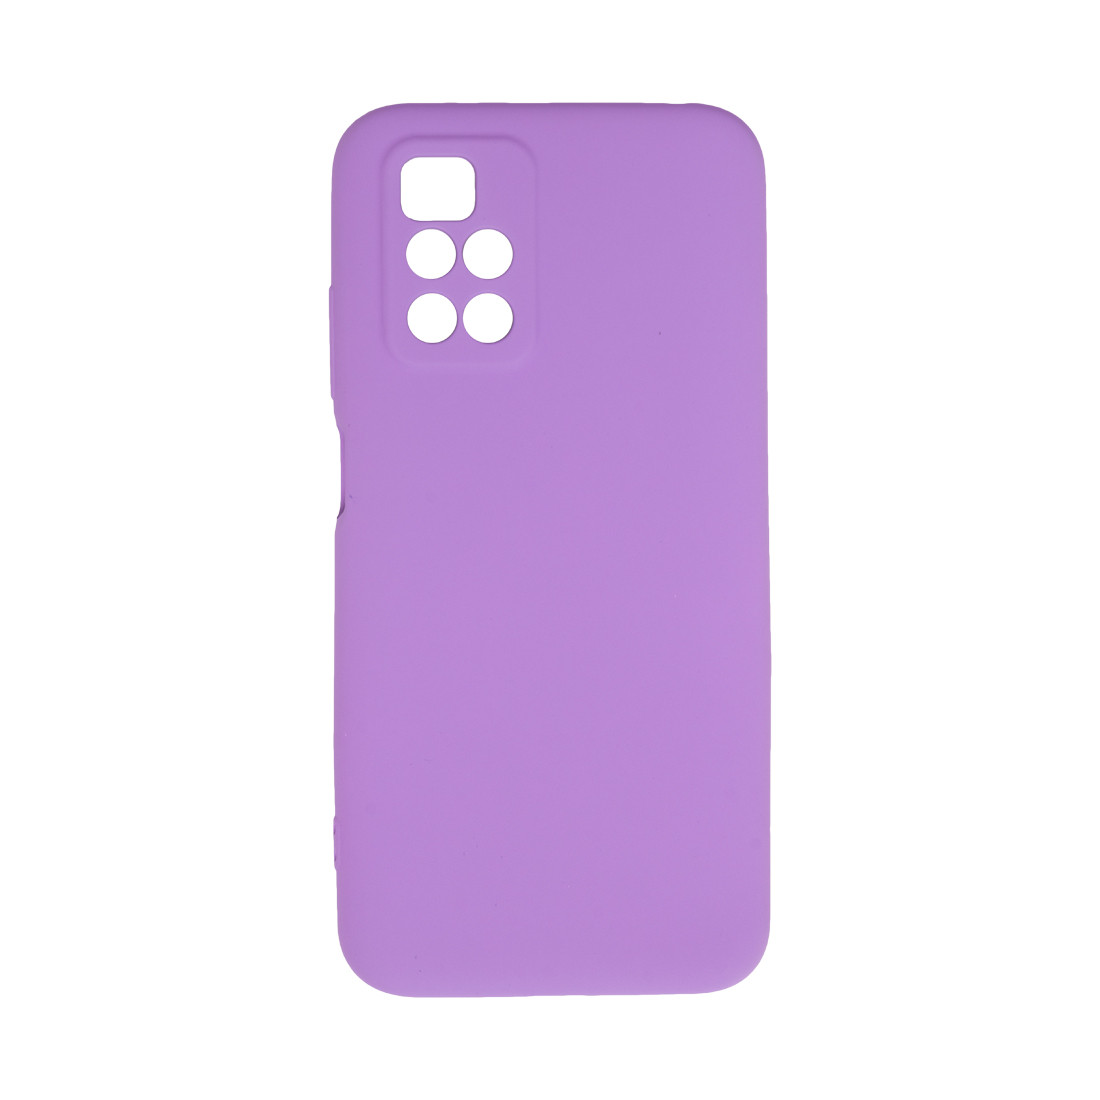 Чехол для телефона  X-Game  XG-HS15  для Redmi 10  Силиконовый  Фиолетовый  Пол. пакет